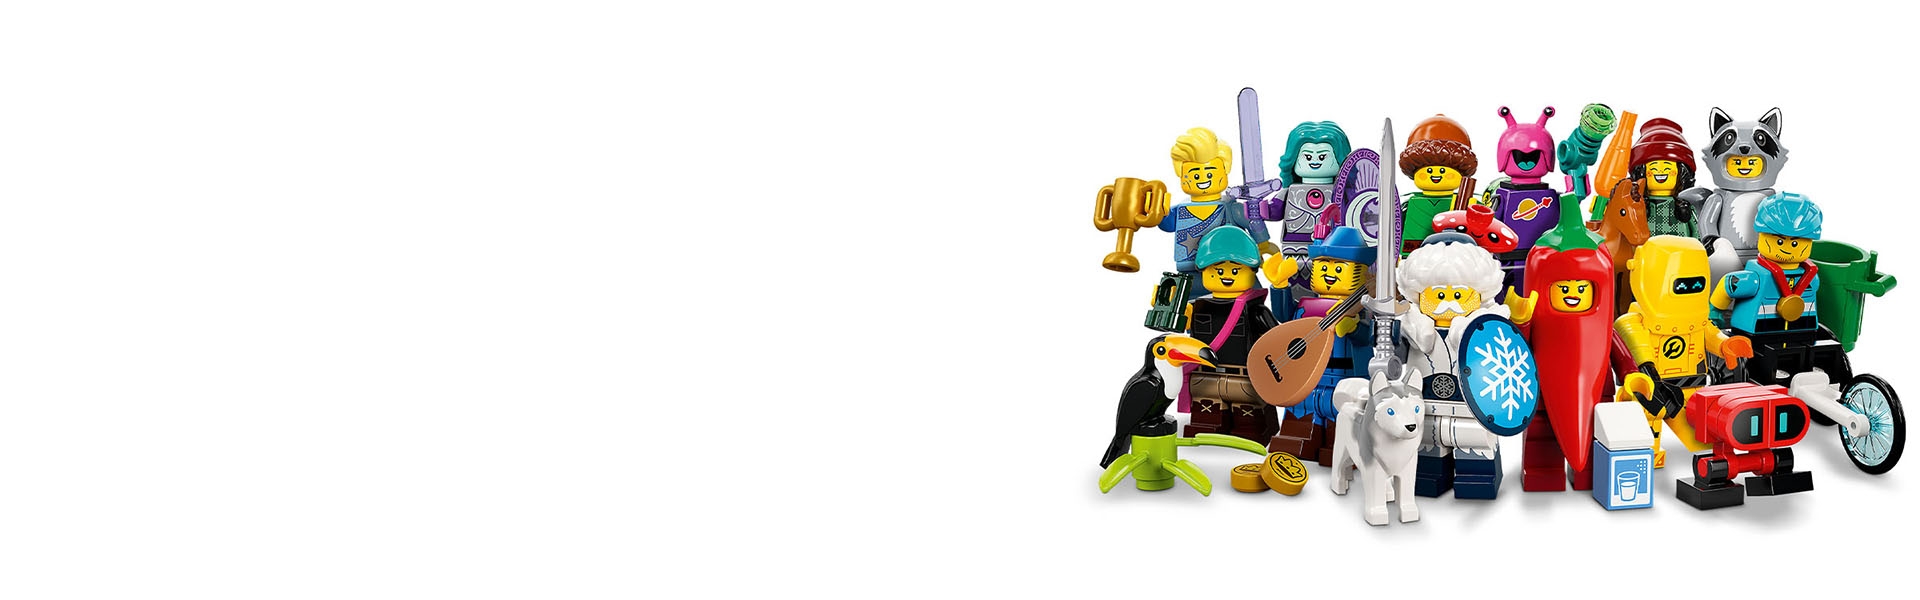 レゴ®ミニフィギュア シリーズ22 71032 | ミニフィギュア |レゴ®ストア公式オンラインショップJPで購入